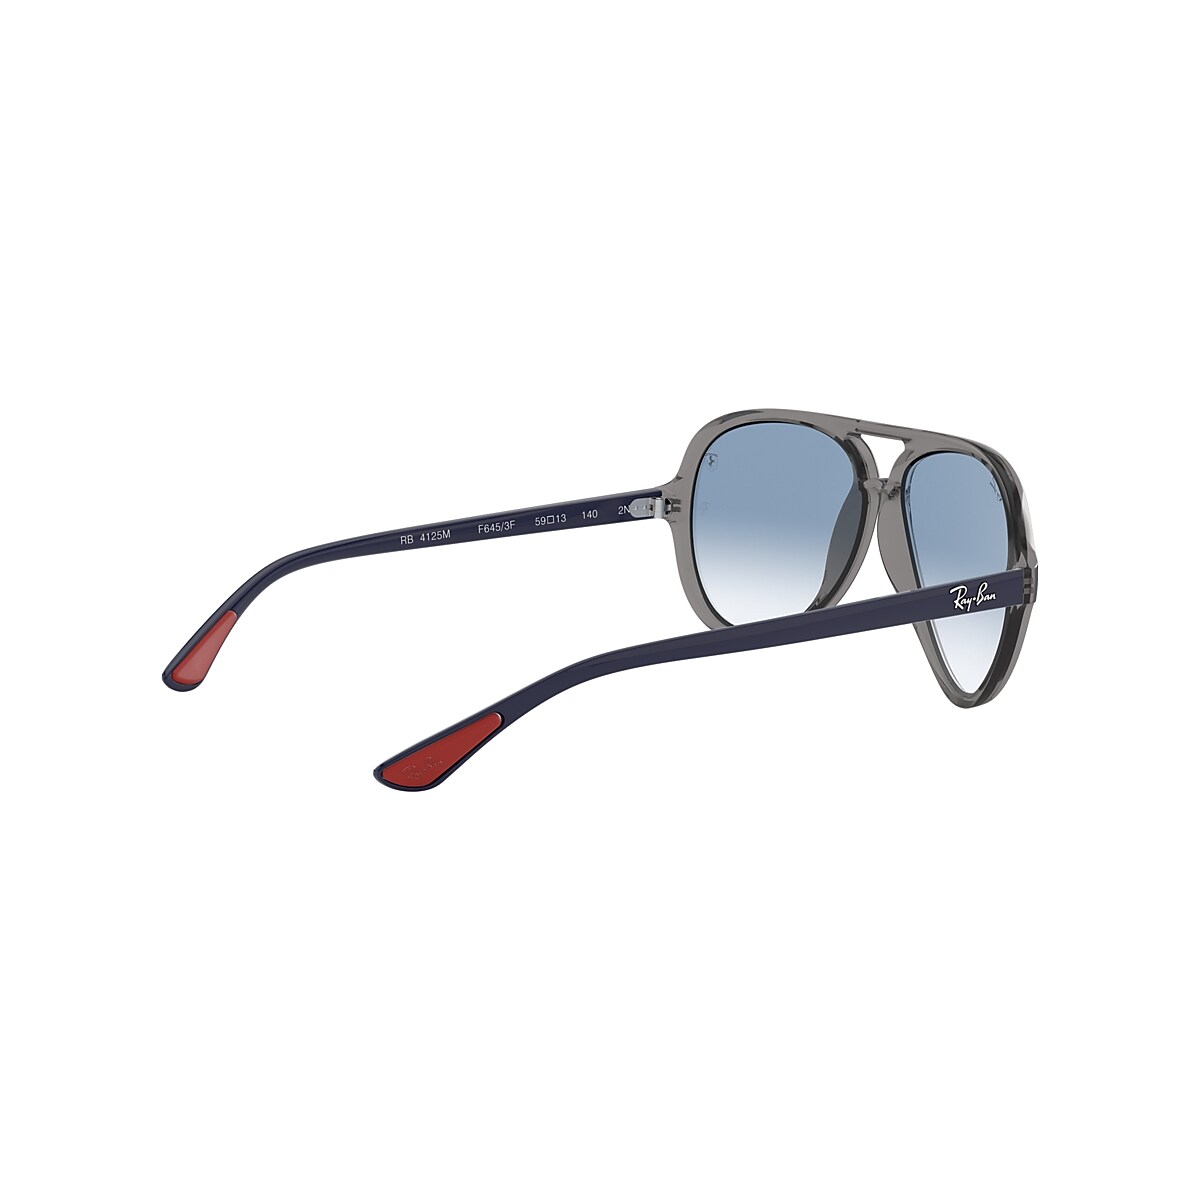 RB4125M SCUDERIA FERRARI COLLECTION Sunglasses in Transparent Grey 